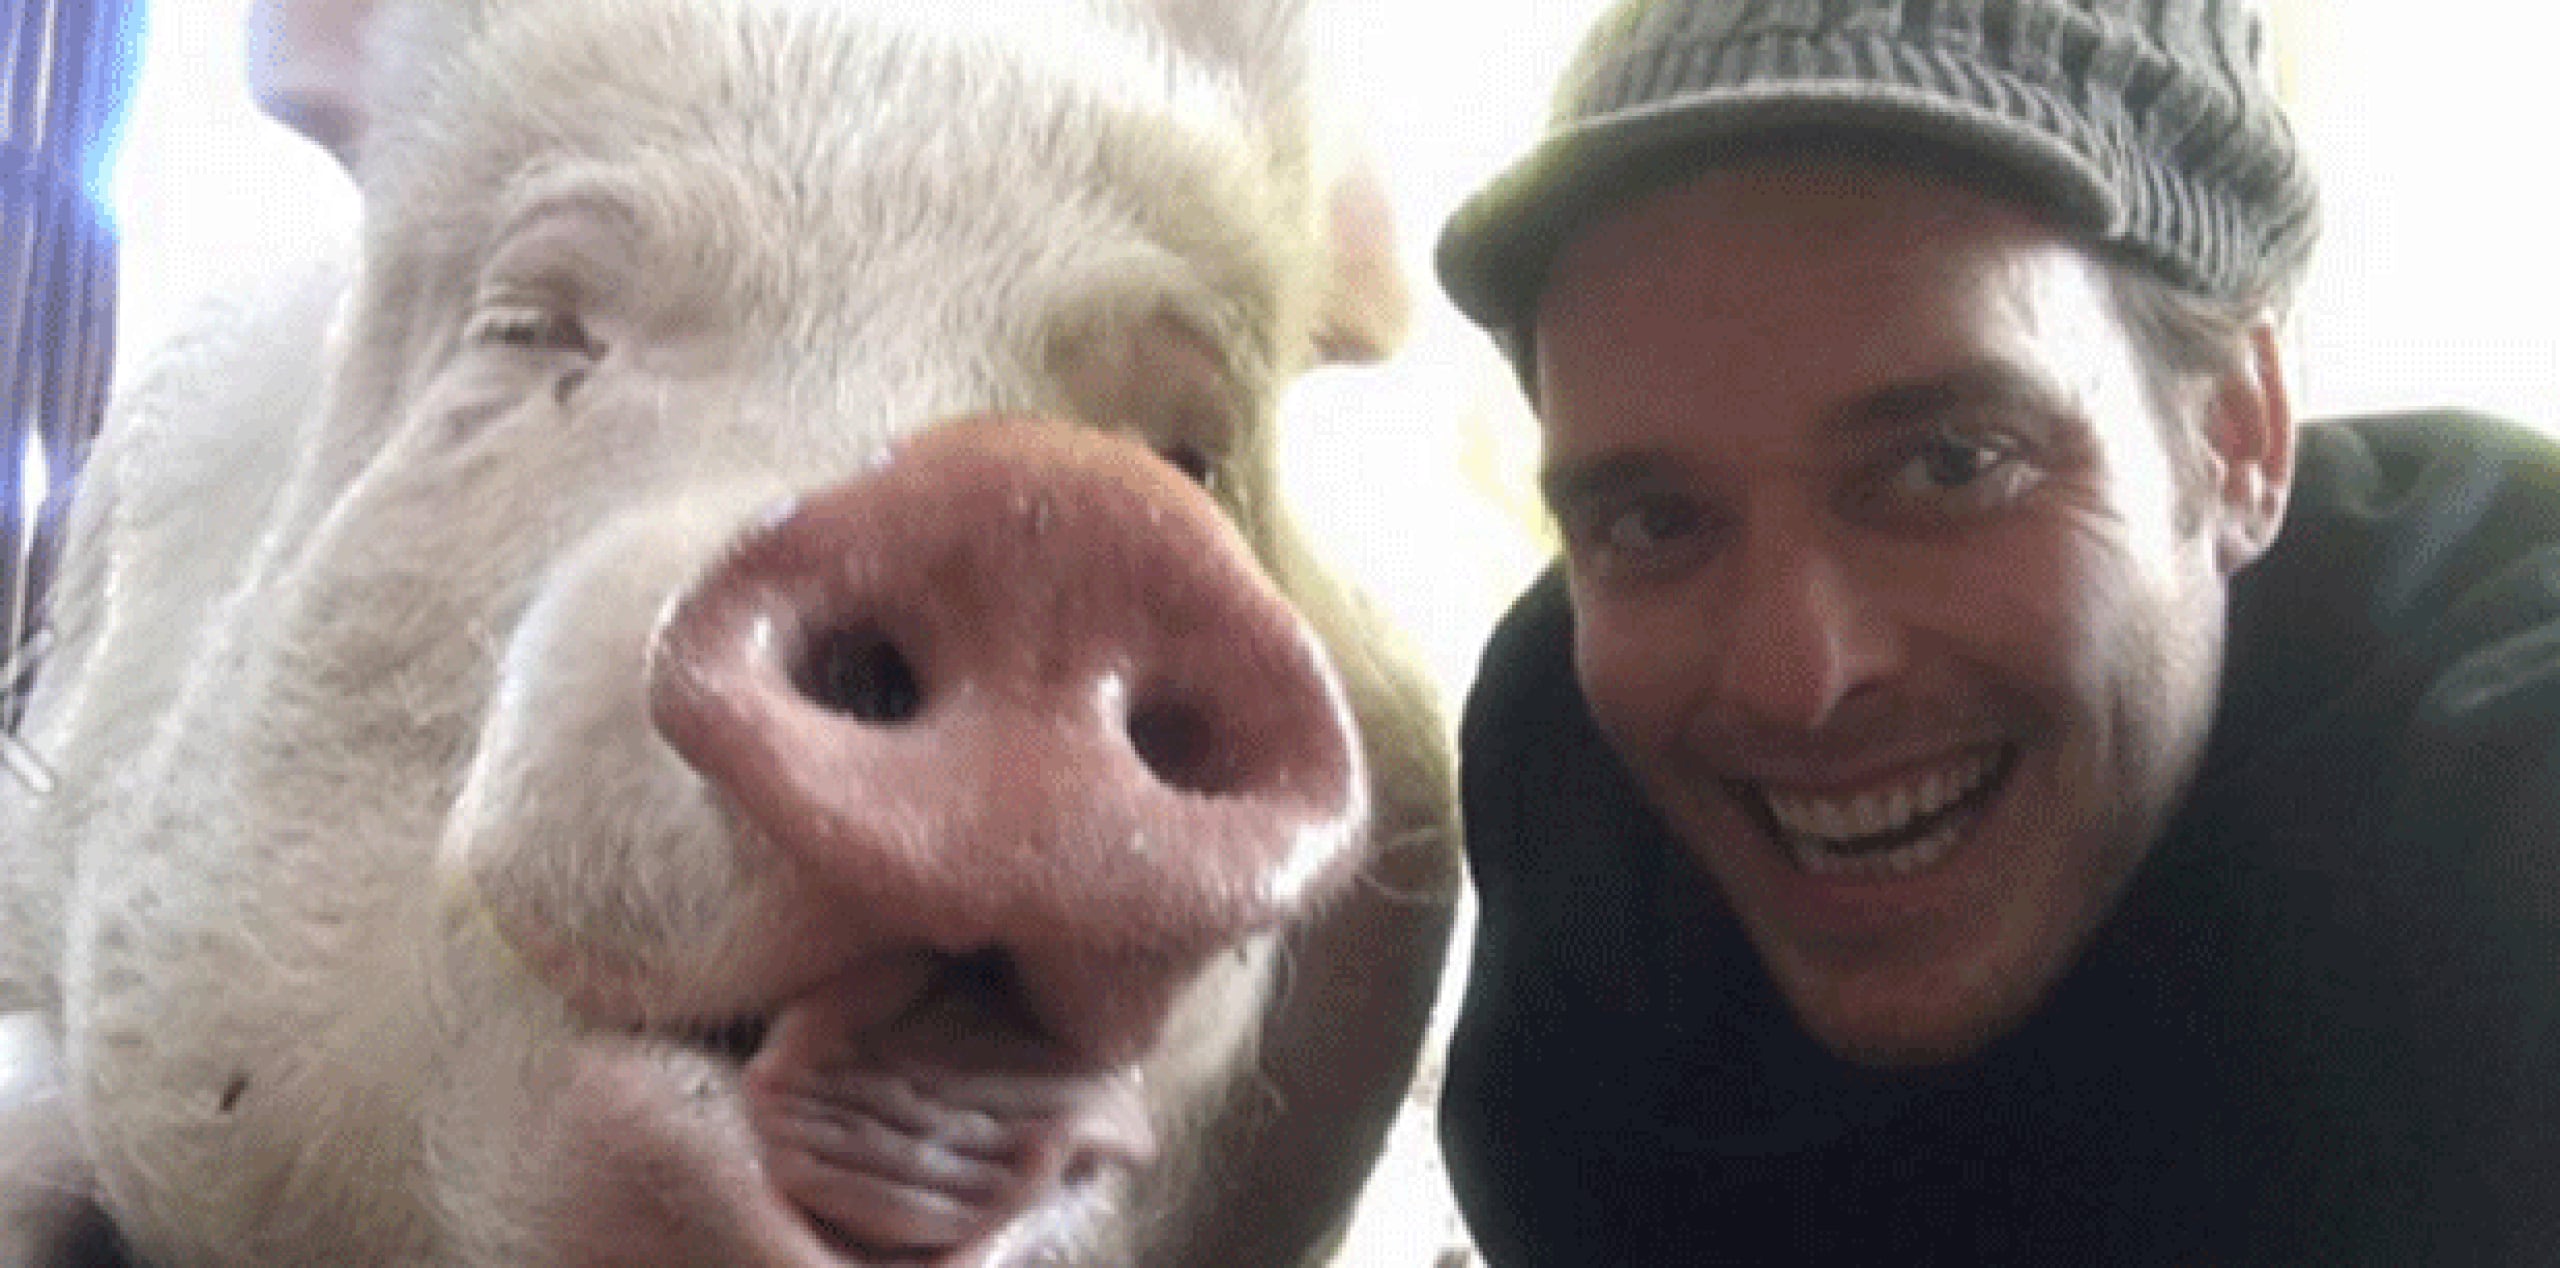 Los encargados de la cerda crearon la página de Facebook Esther the Wonder Pig, en donde publican las vivencias del animal. (Facebook)